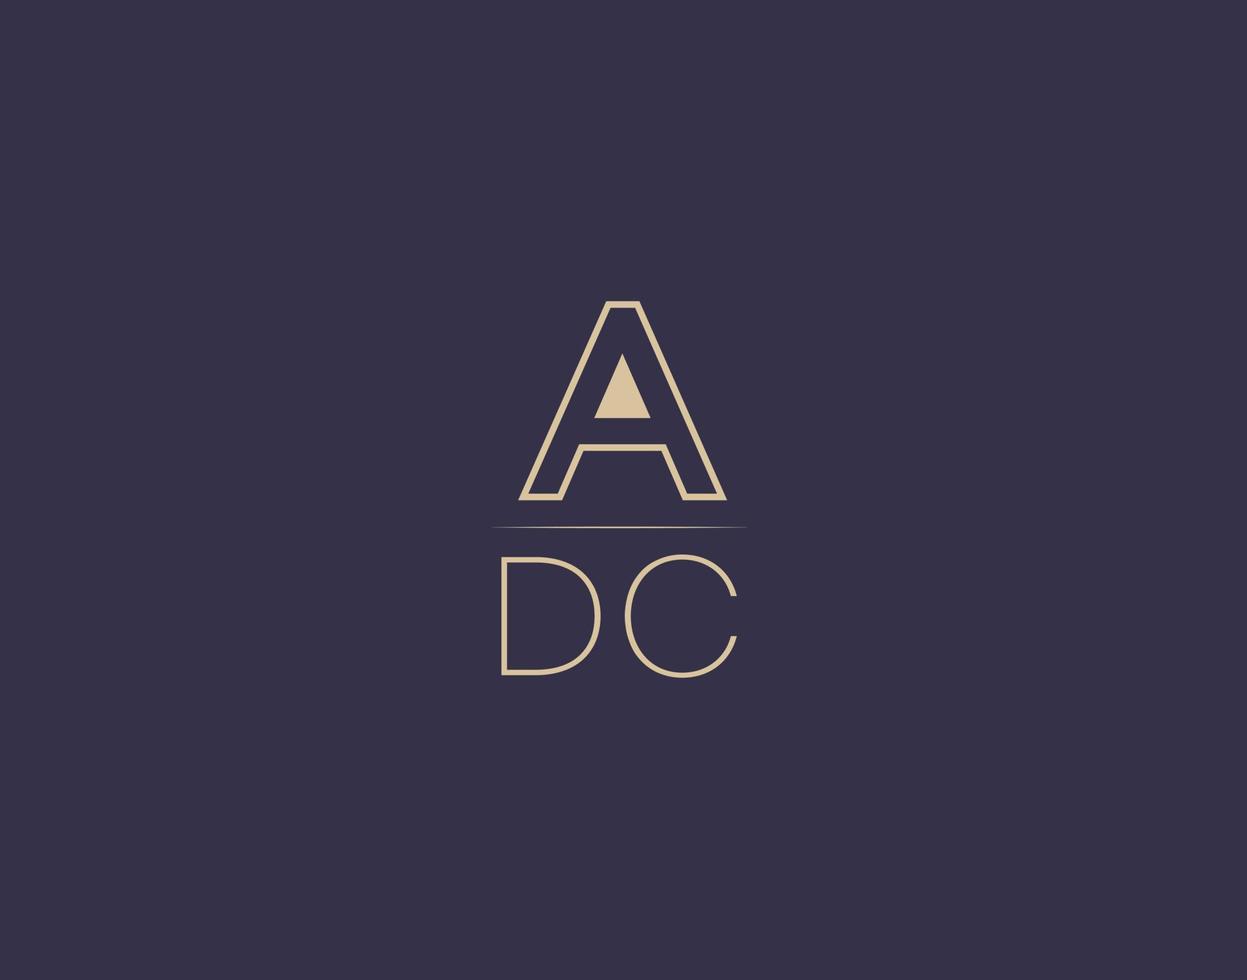 imágenes vectoriales minimalistas modernas de diseño de logotipo de letra adc vector